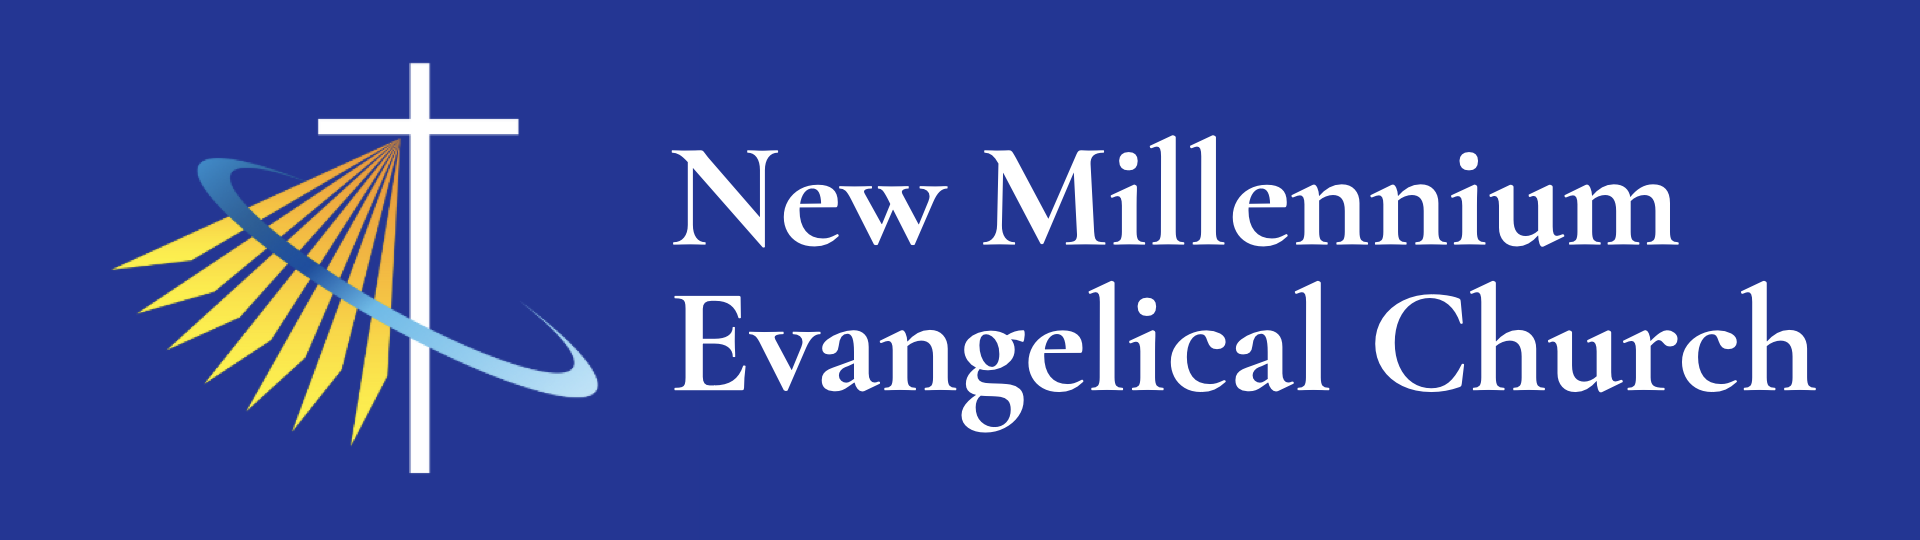 New Millennium Evangelical Church